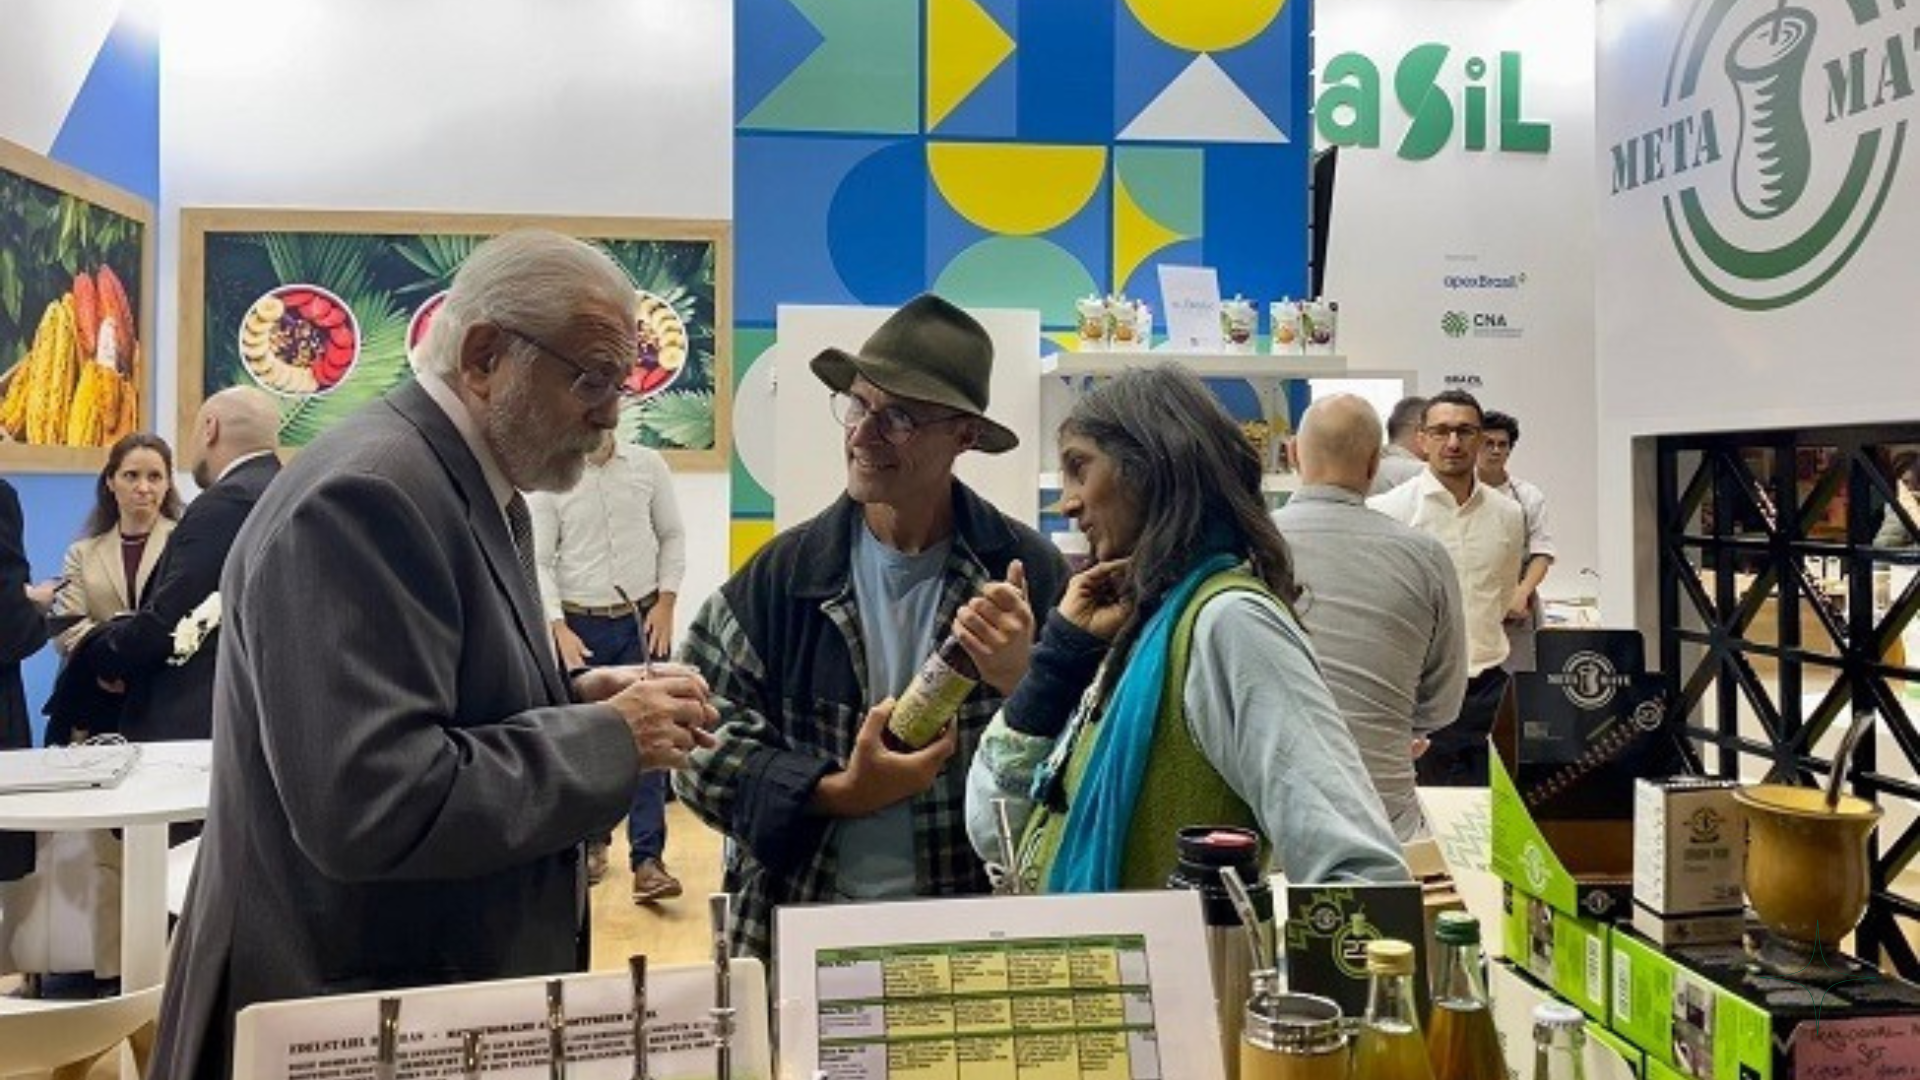 Embaixador do Brasil na Alemanha visita produtores durante feira em Berlim